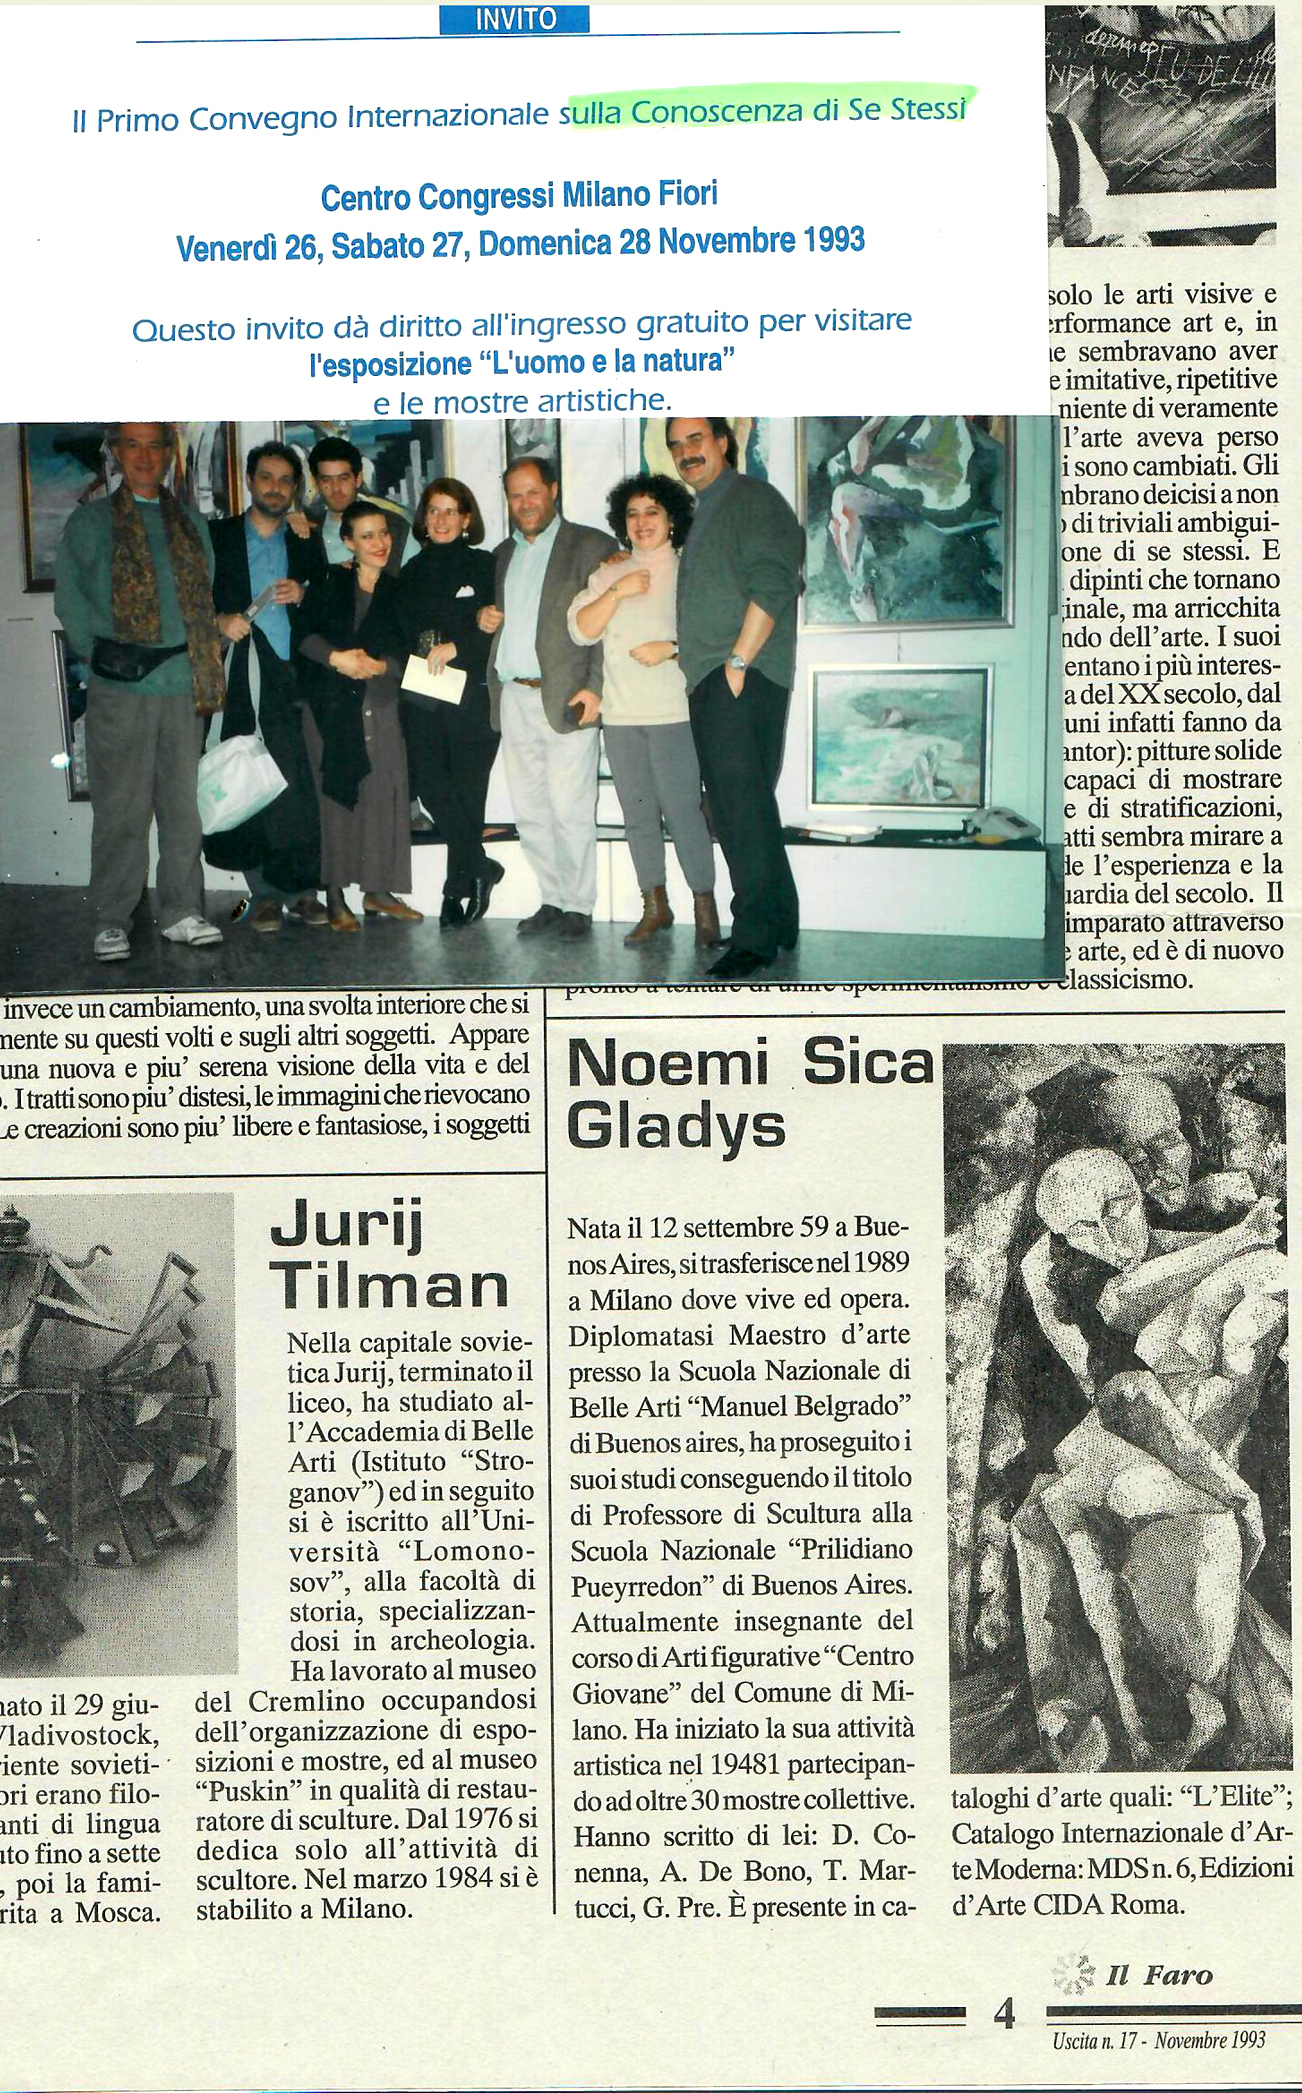 1993 - Collettiva, Convegno Internazionale 'La conoscenza di Se Stessi', Assago Milano-Fiori.